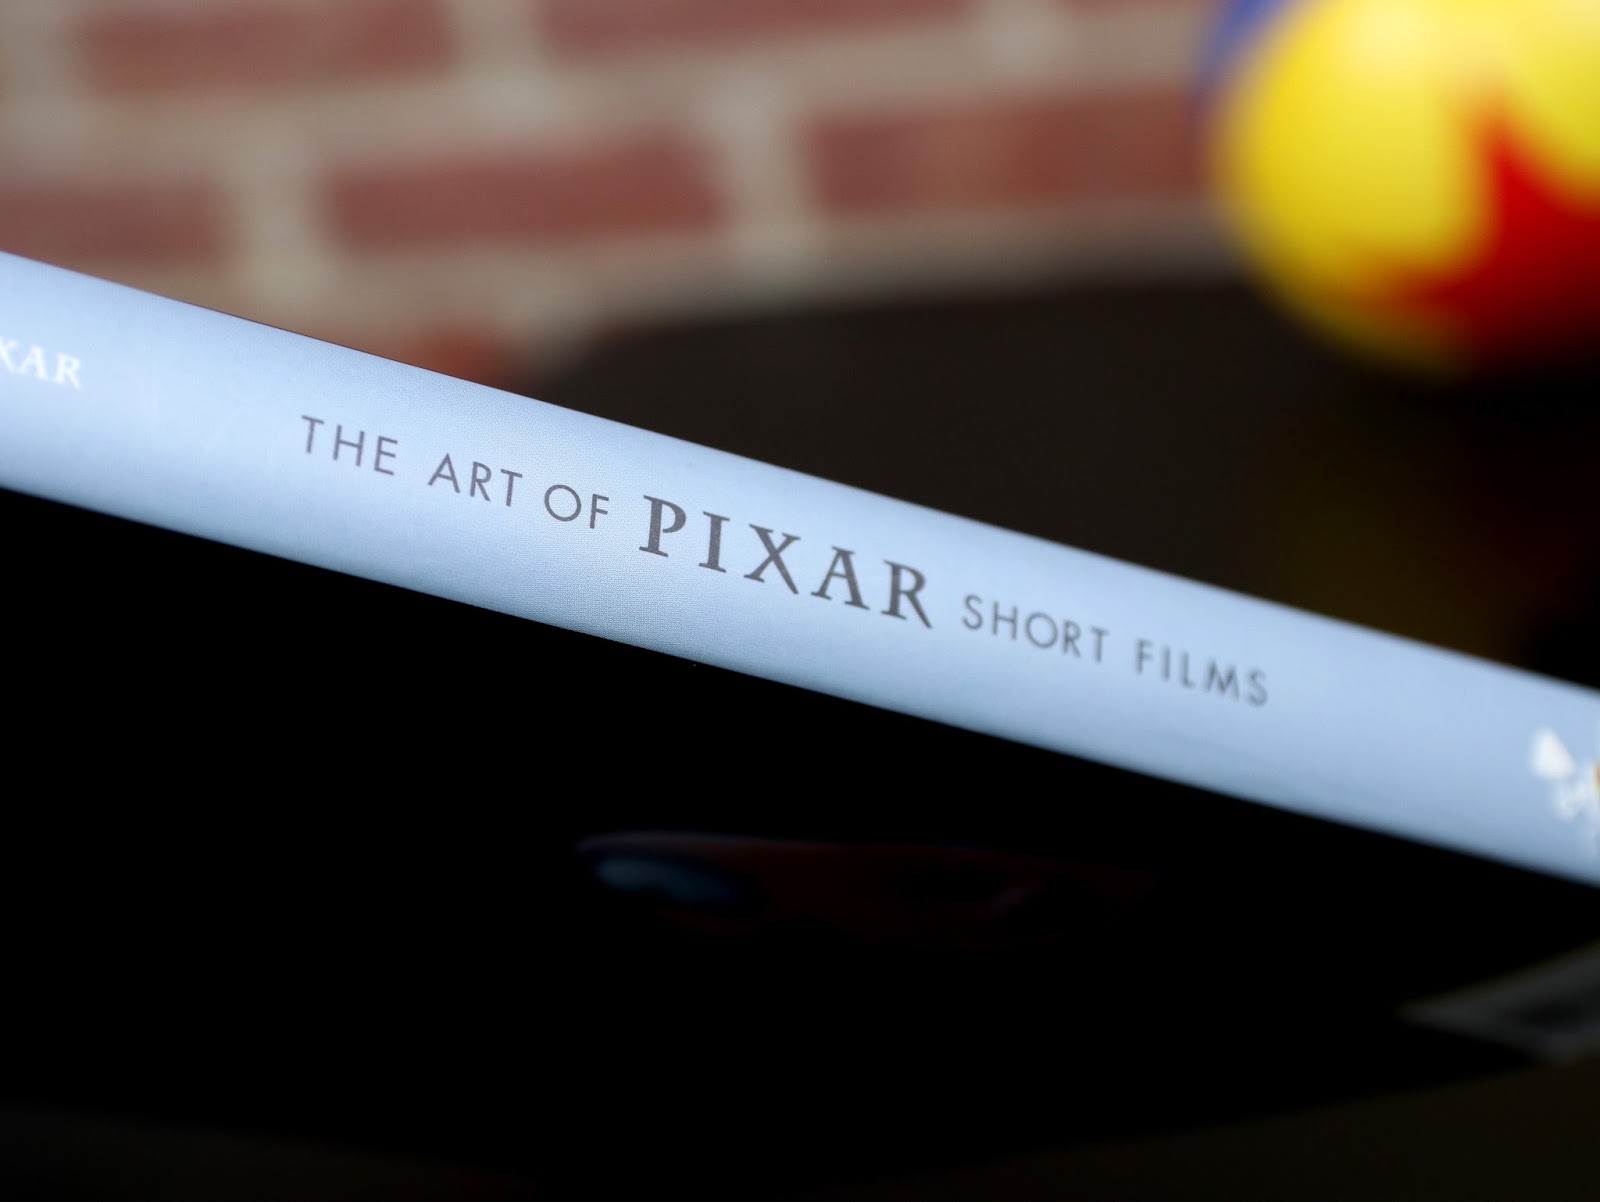 the art of pixar short films book review 